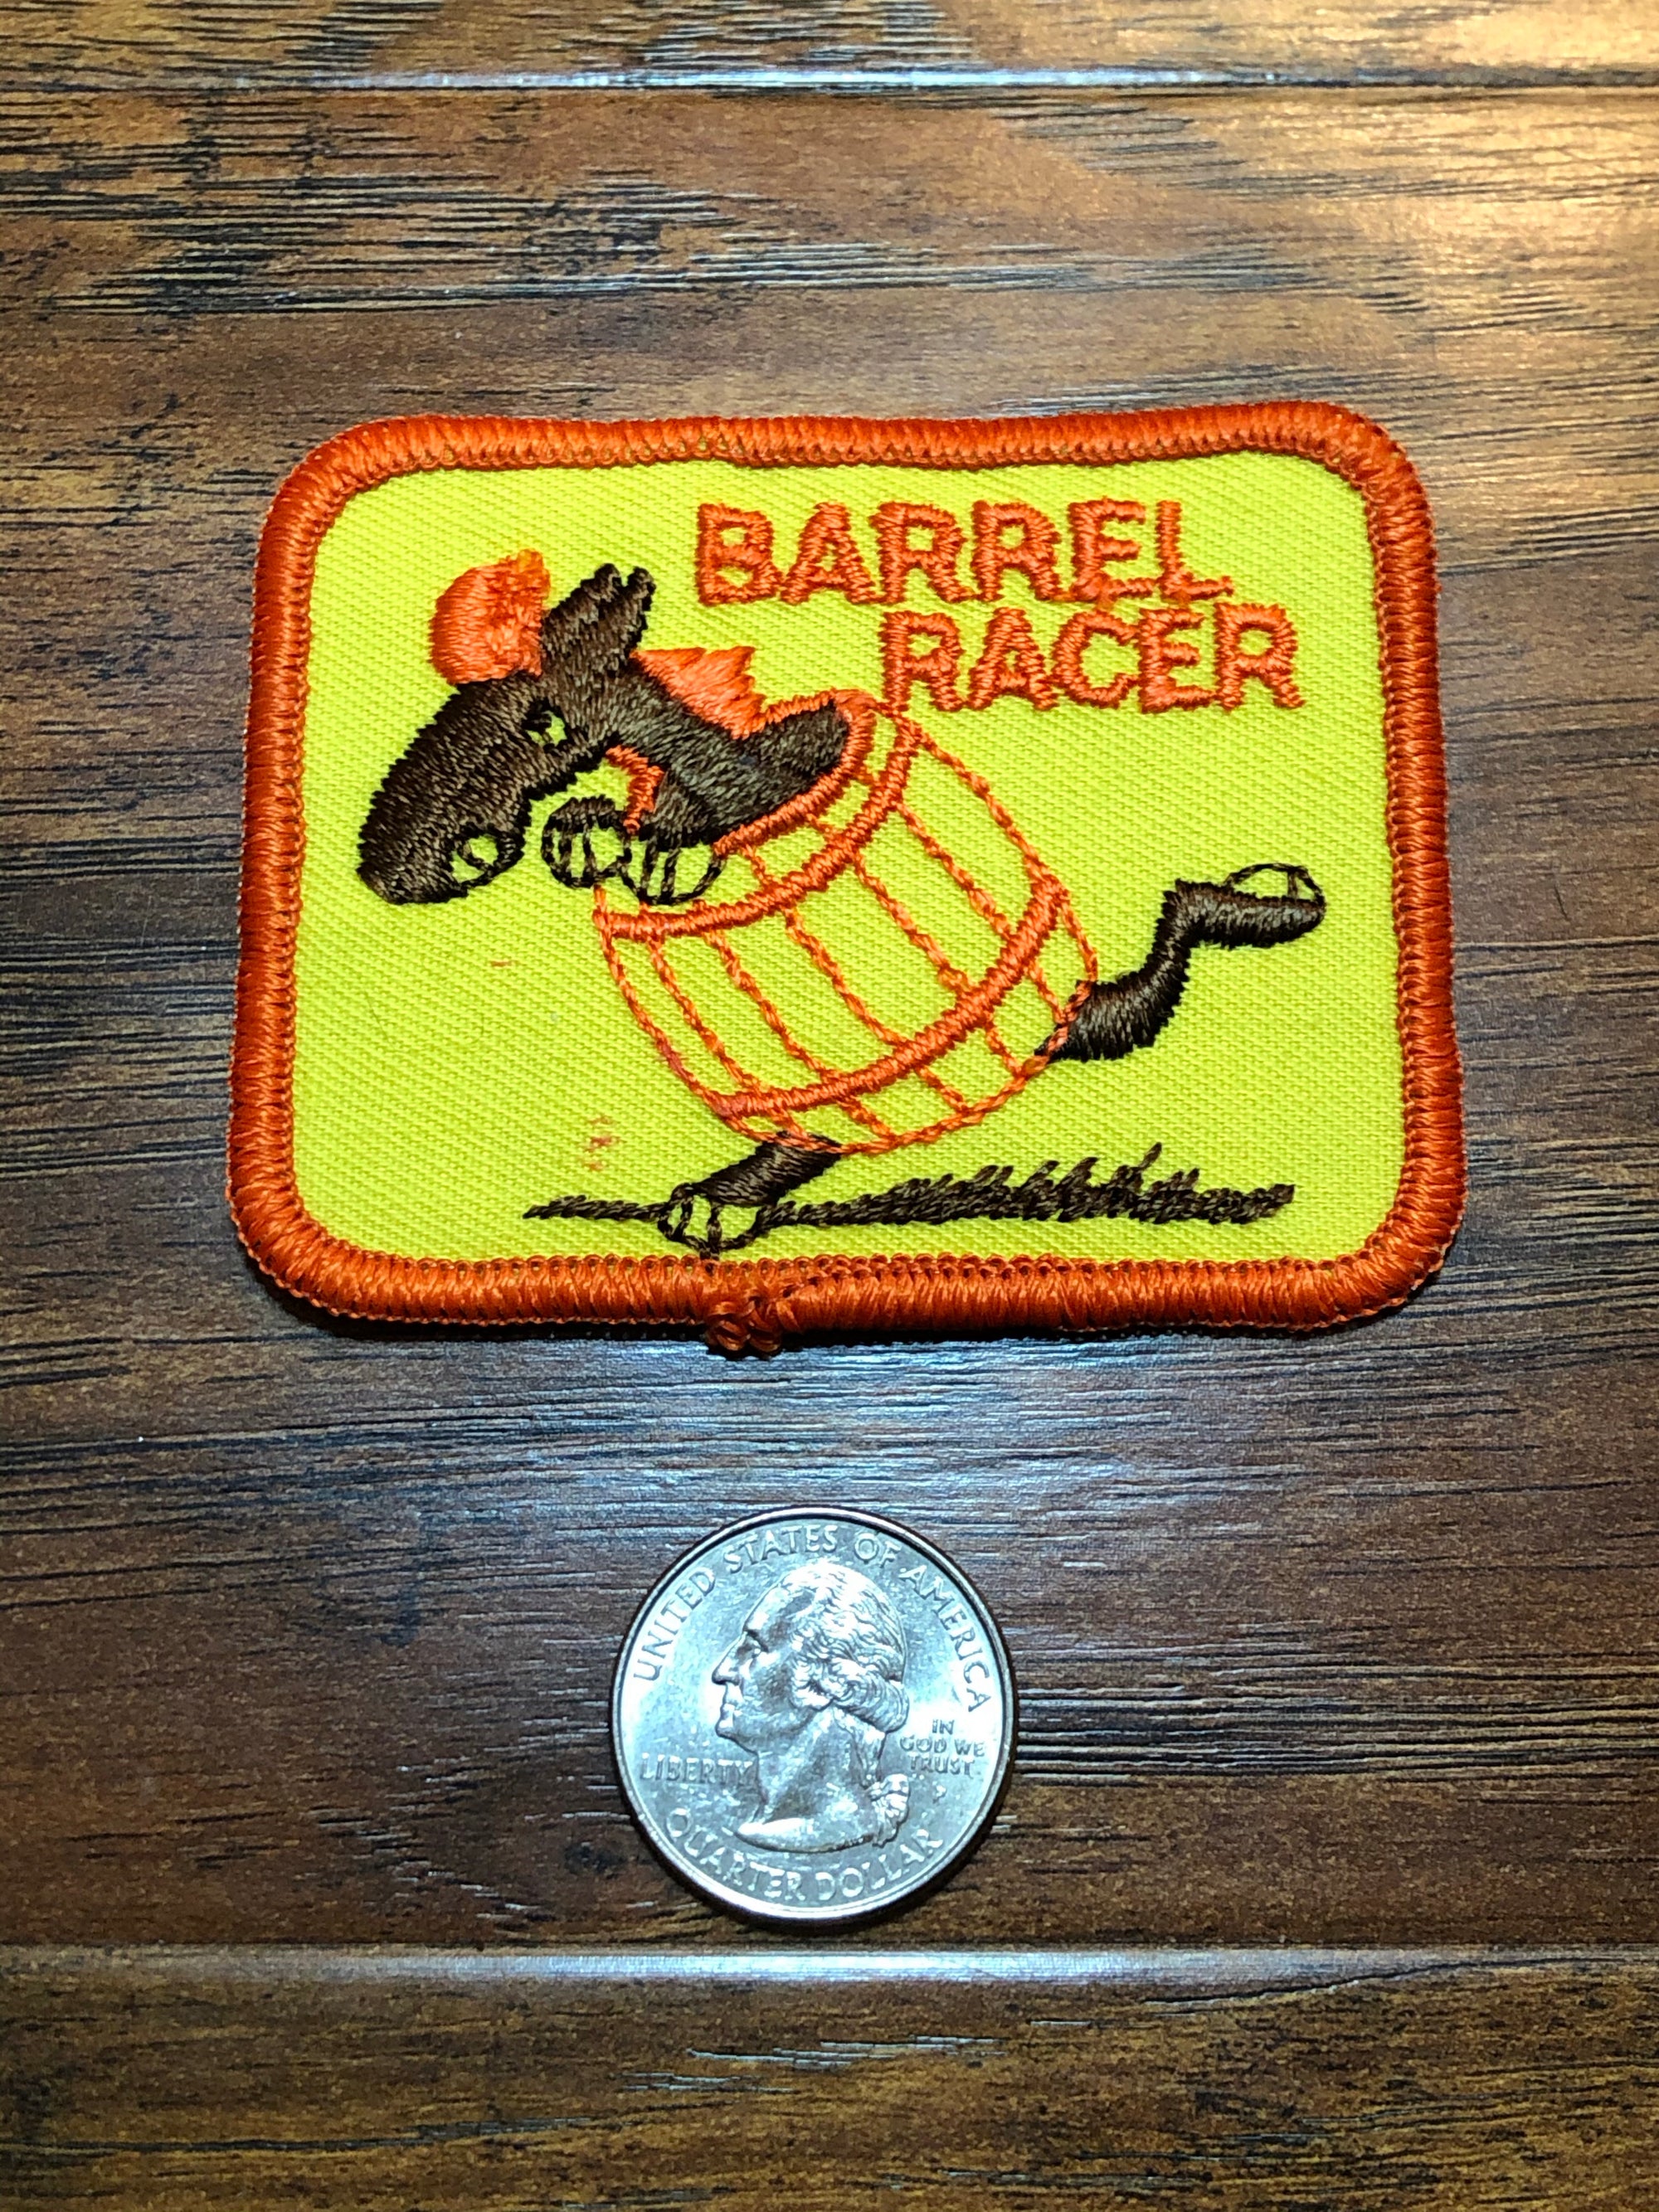 Vintage Barrel Racer